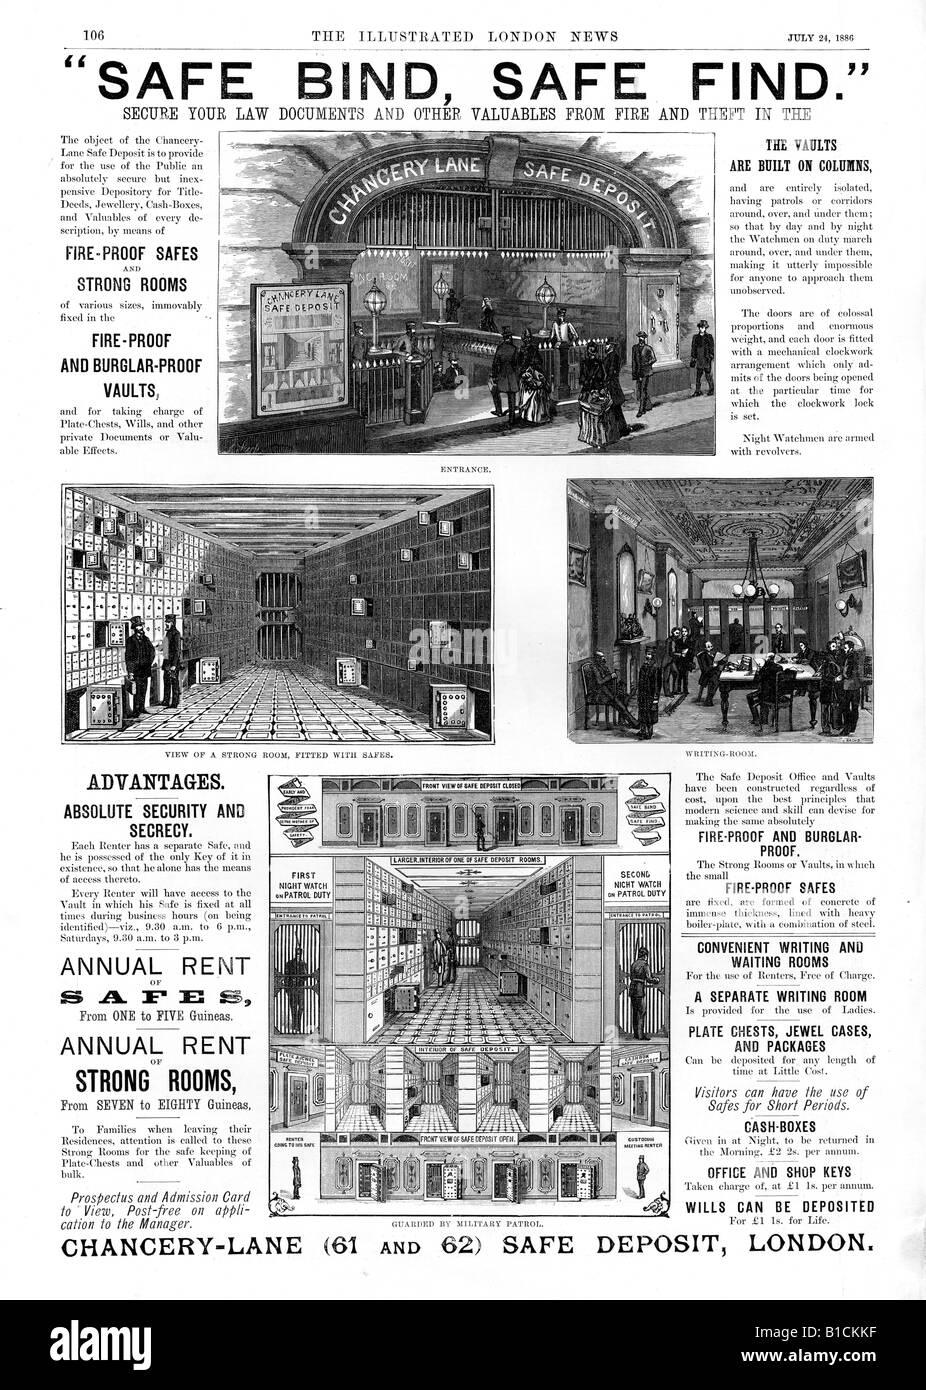 Chancery Lane sichere Einzahlung 1886 Werbung für die London sicher Einlagefazilität für Geld Dokumente und Wertsachen Stockfoto